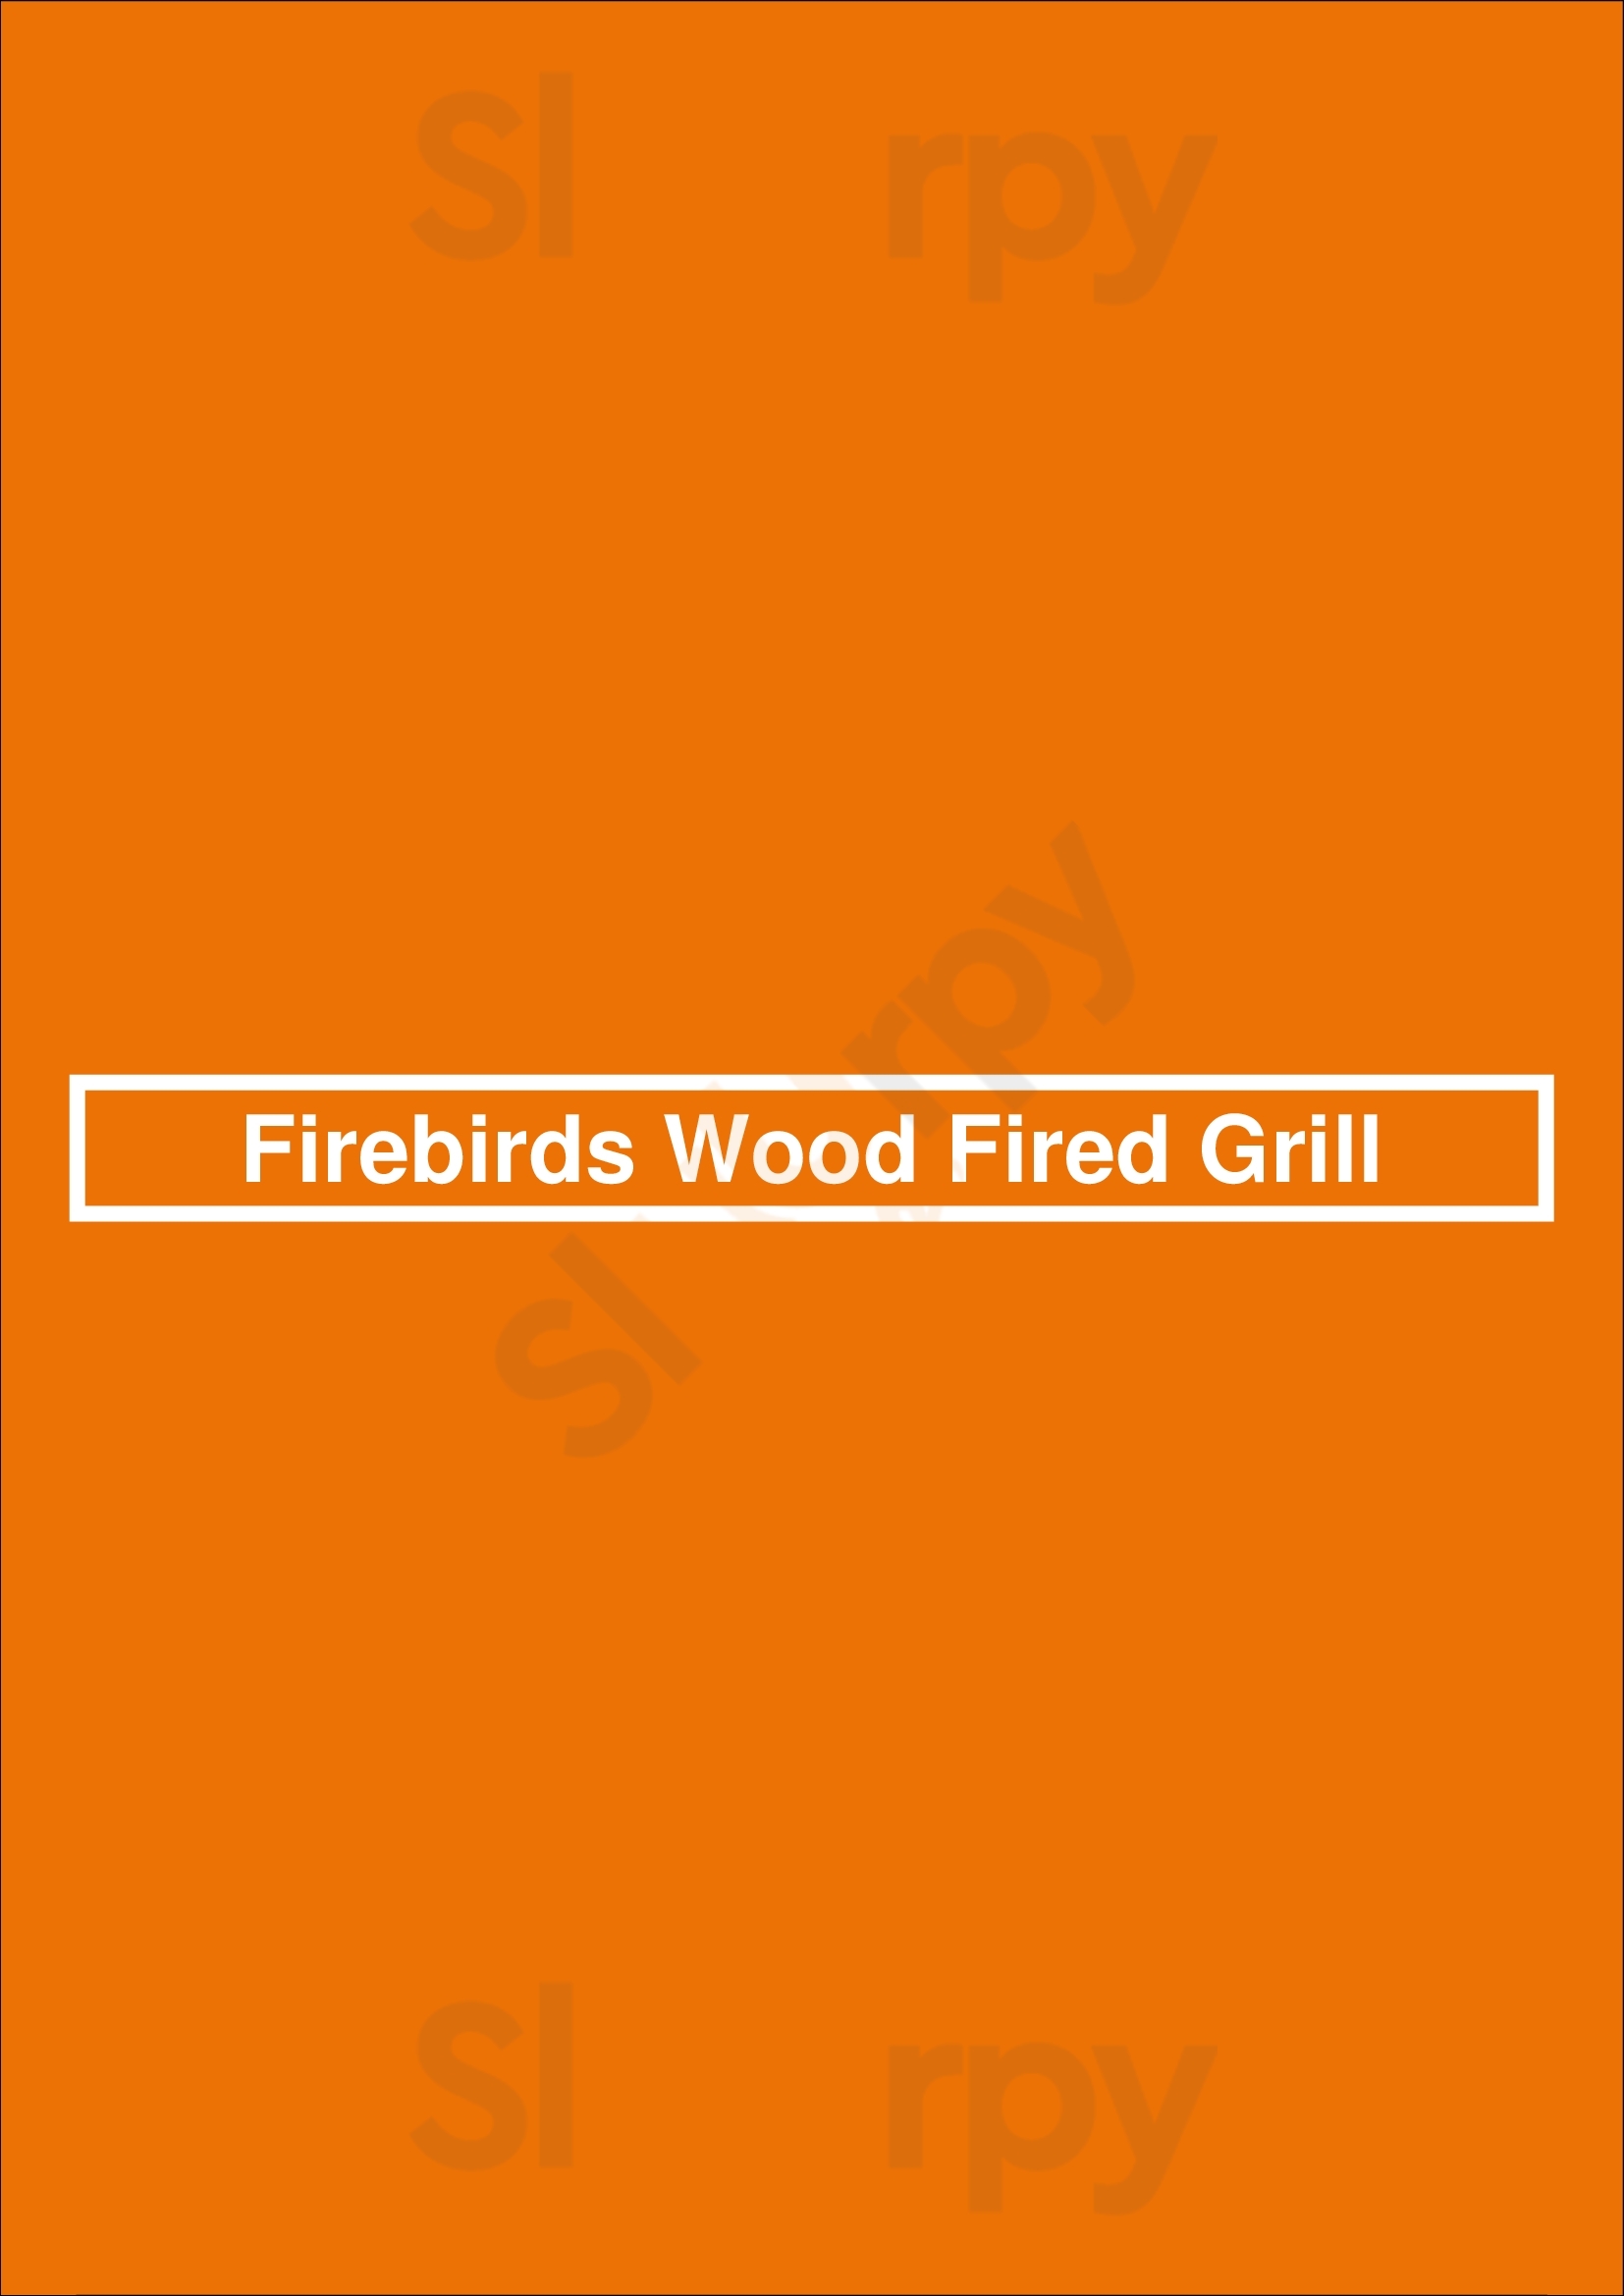 Firebirds Wood Fired Grill Tucson Menu - 1